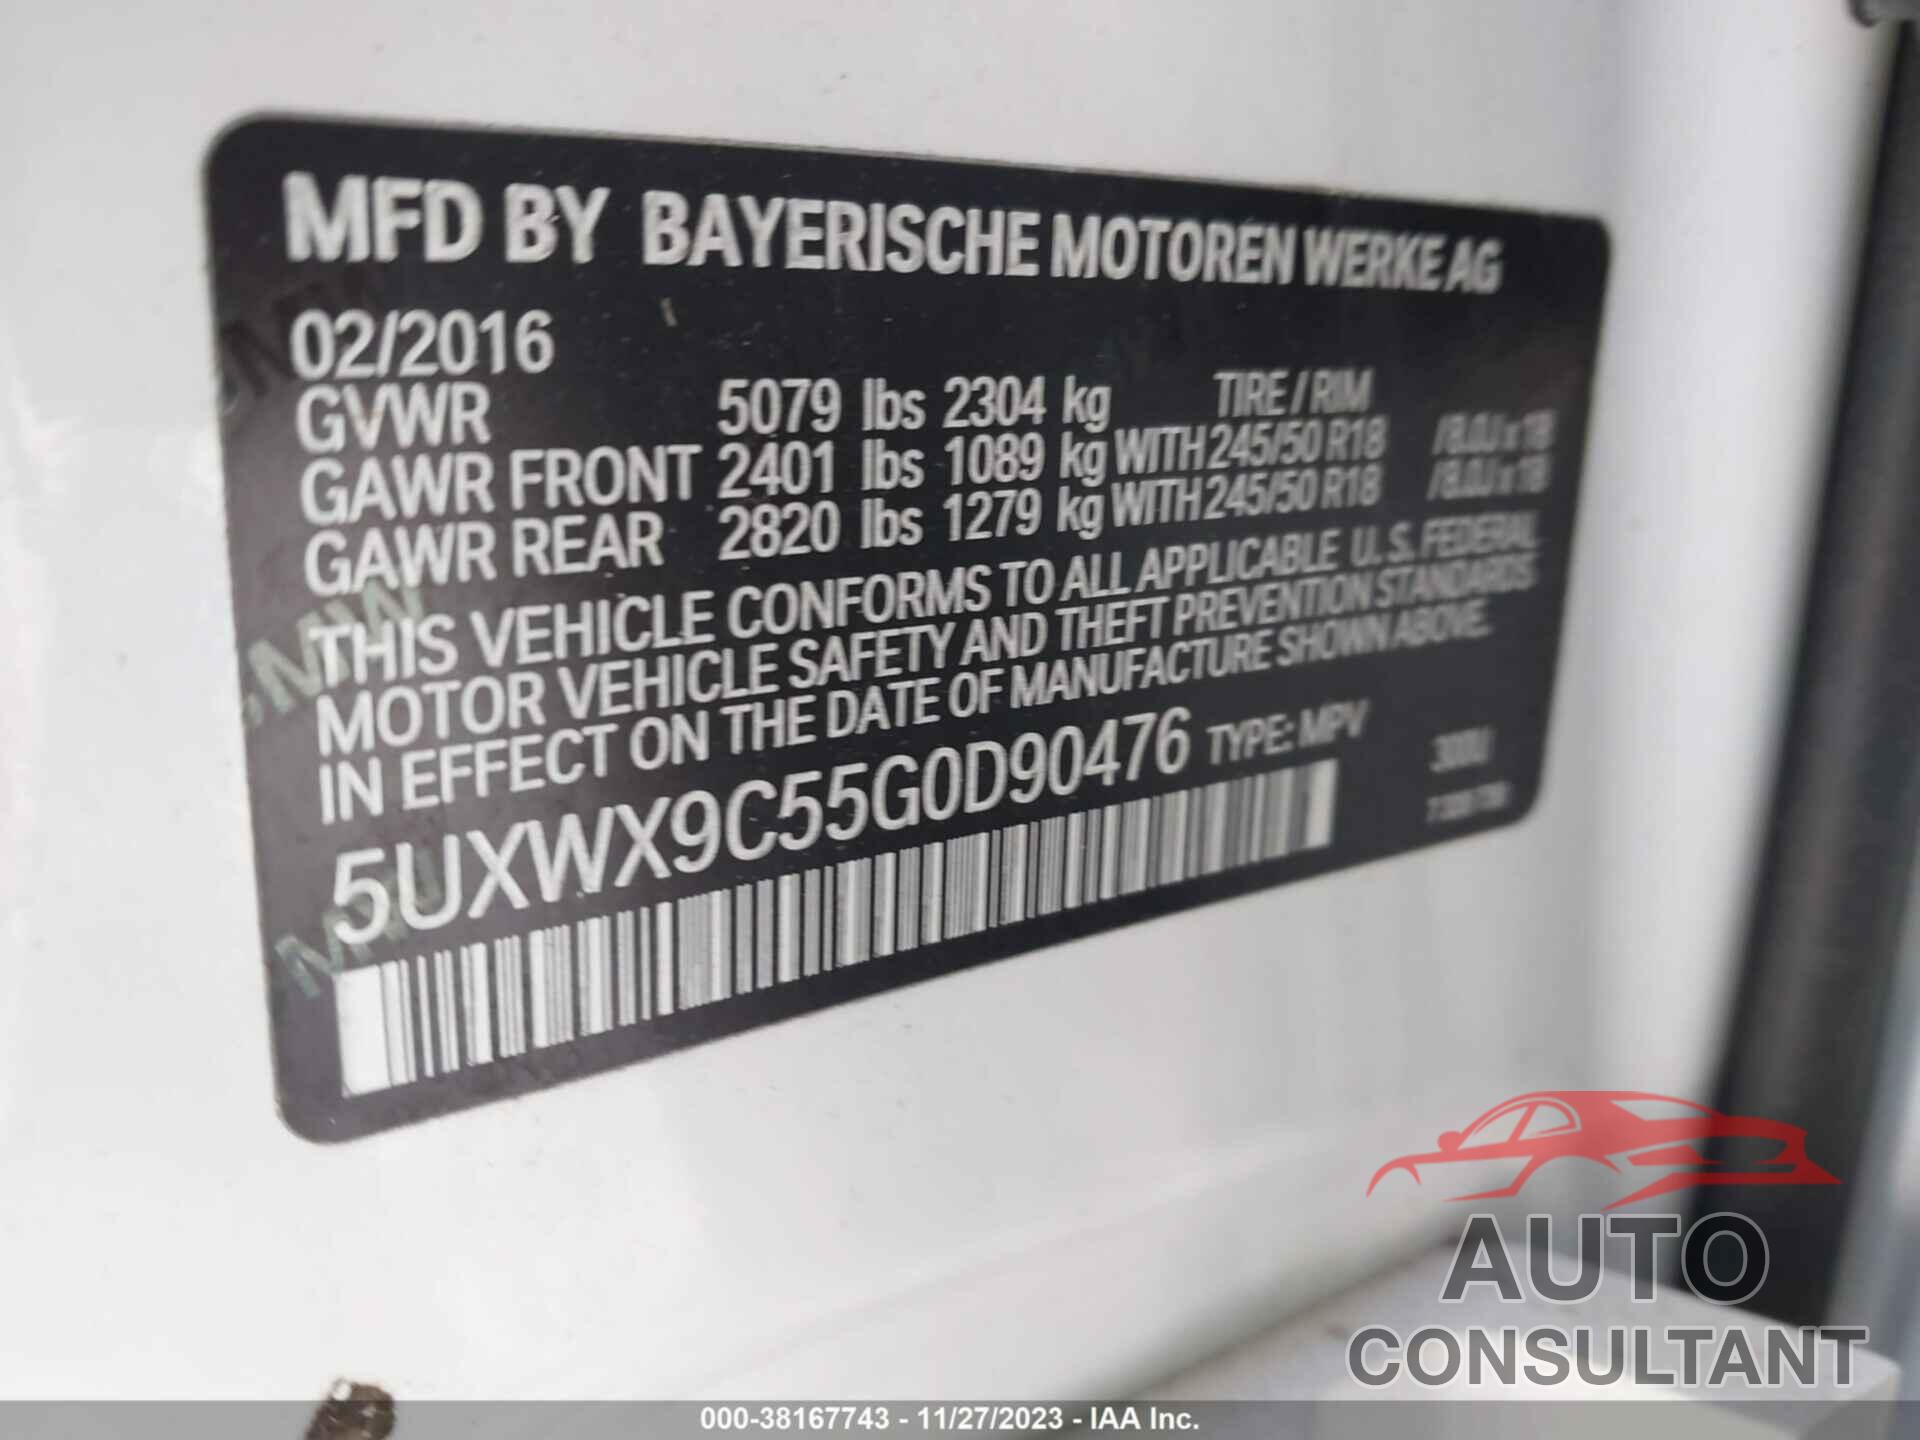 BMW X3 2016 - 5UXWX9C55G0D90476